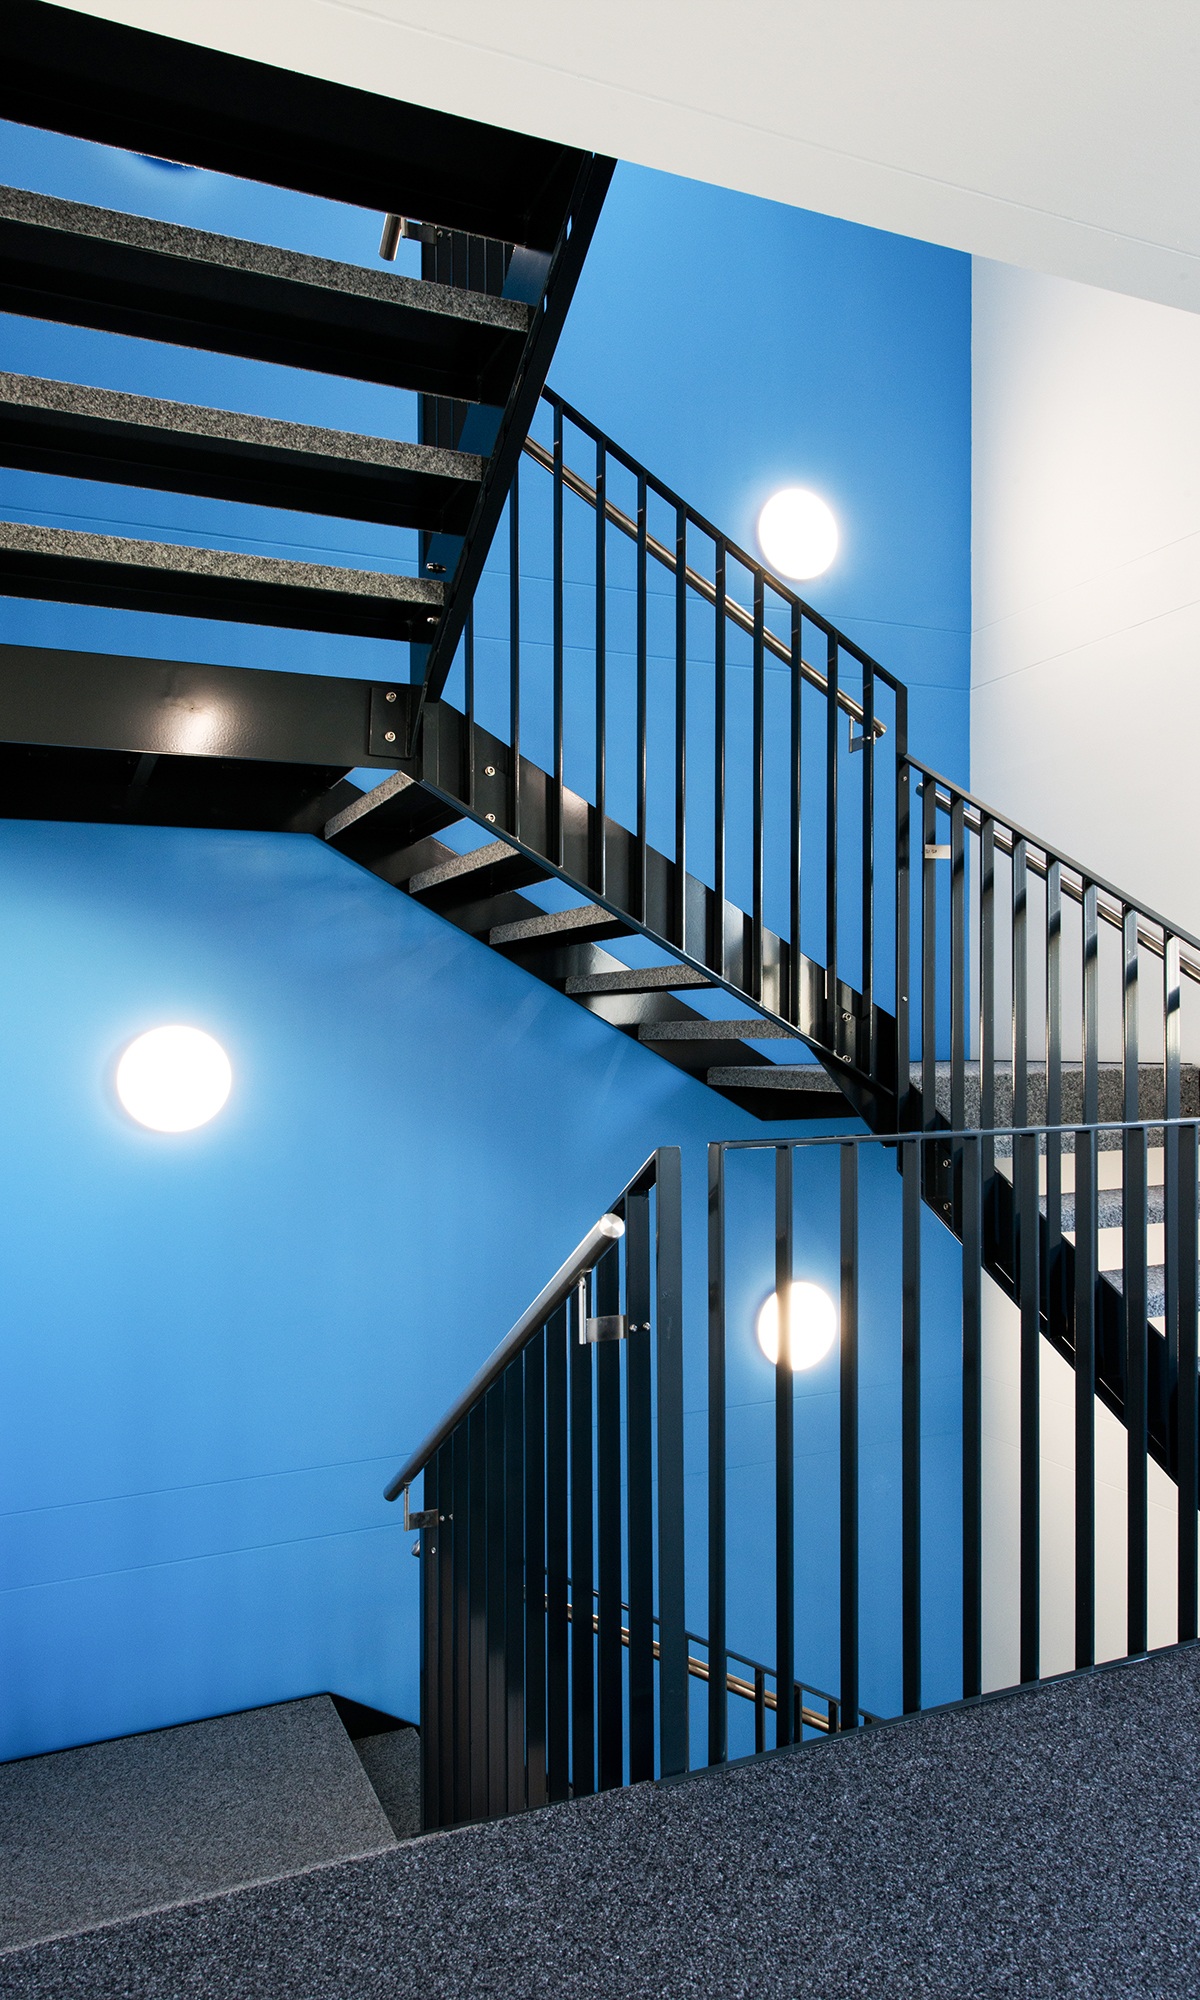 Treppenhaus im Büroprovisorium von Lausanne Transport mit blauen Wänden